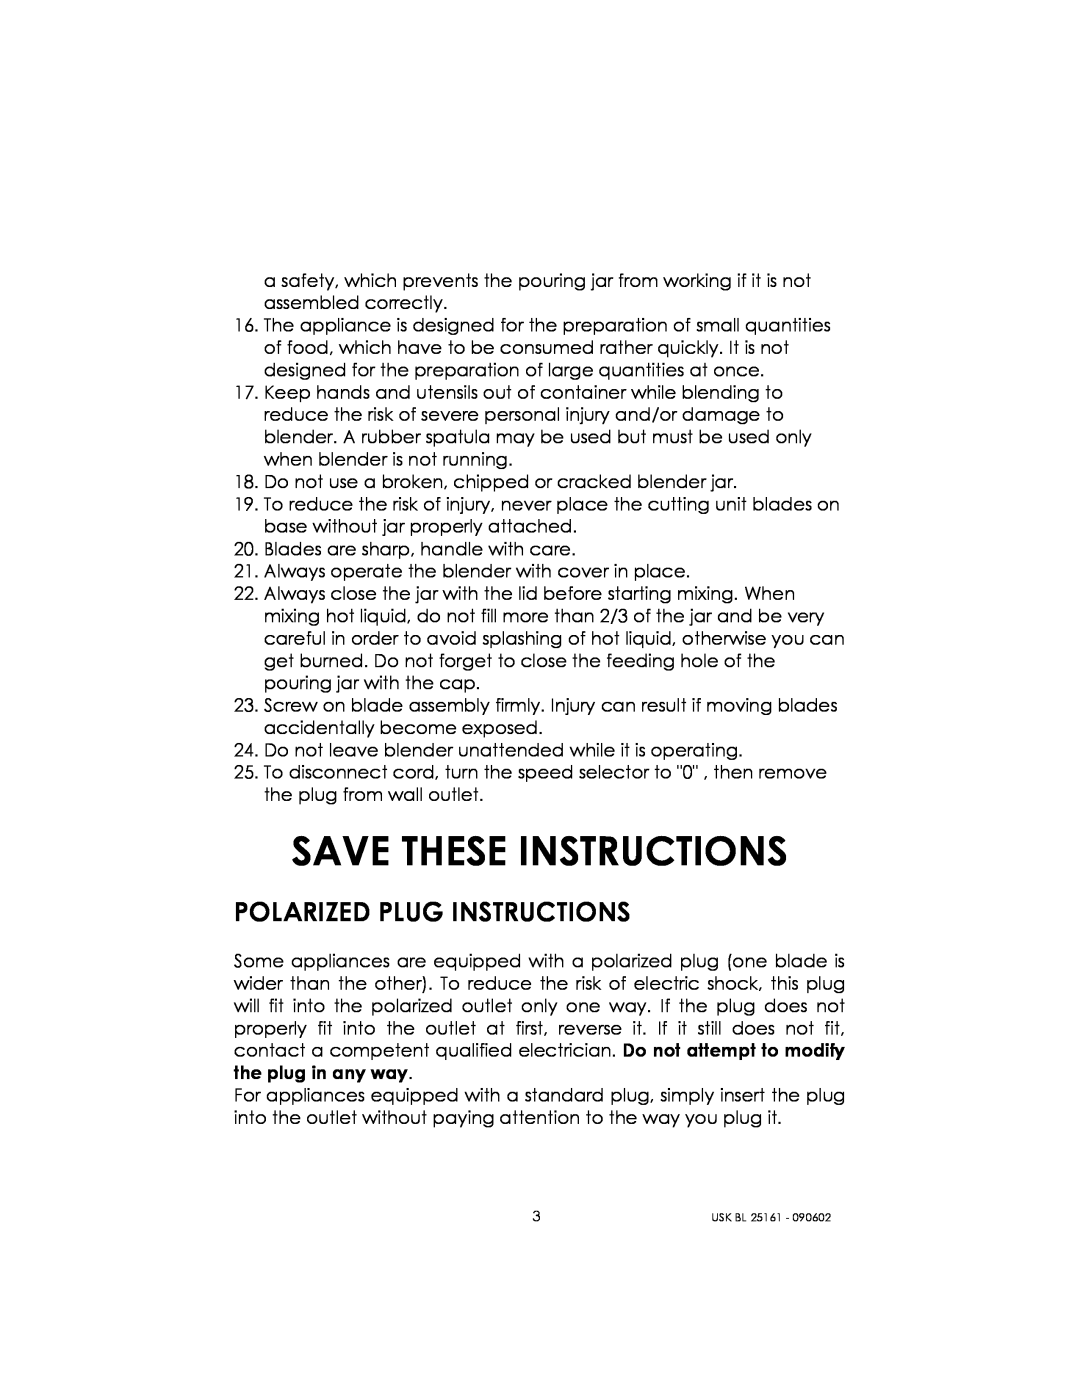 Kalorik usk bl 25161 manual Save These Instructions, Polarized Plug Instructions 